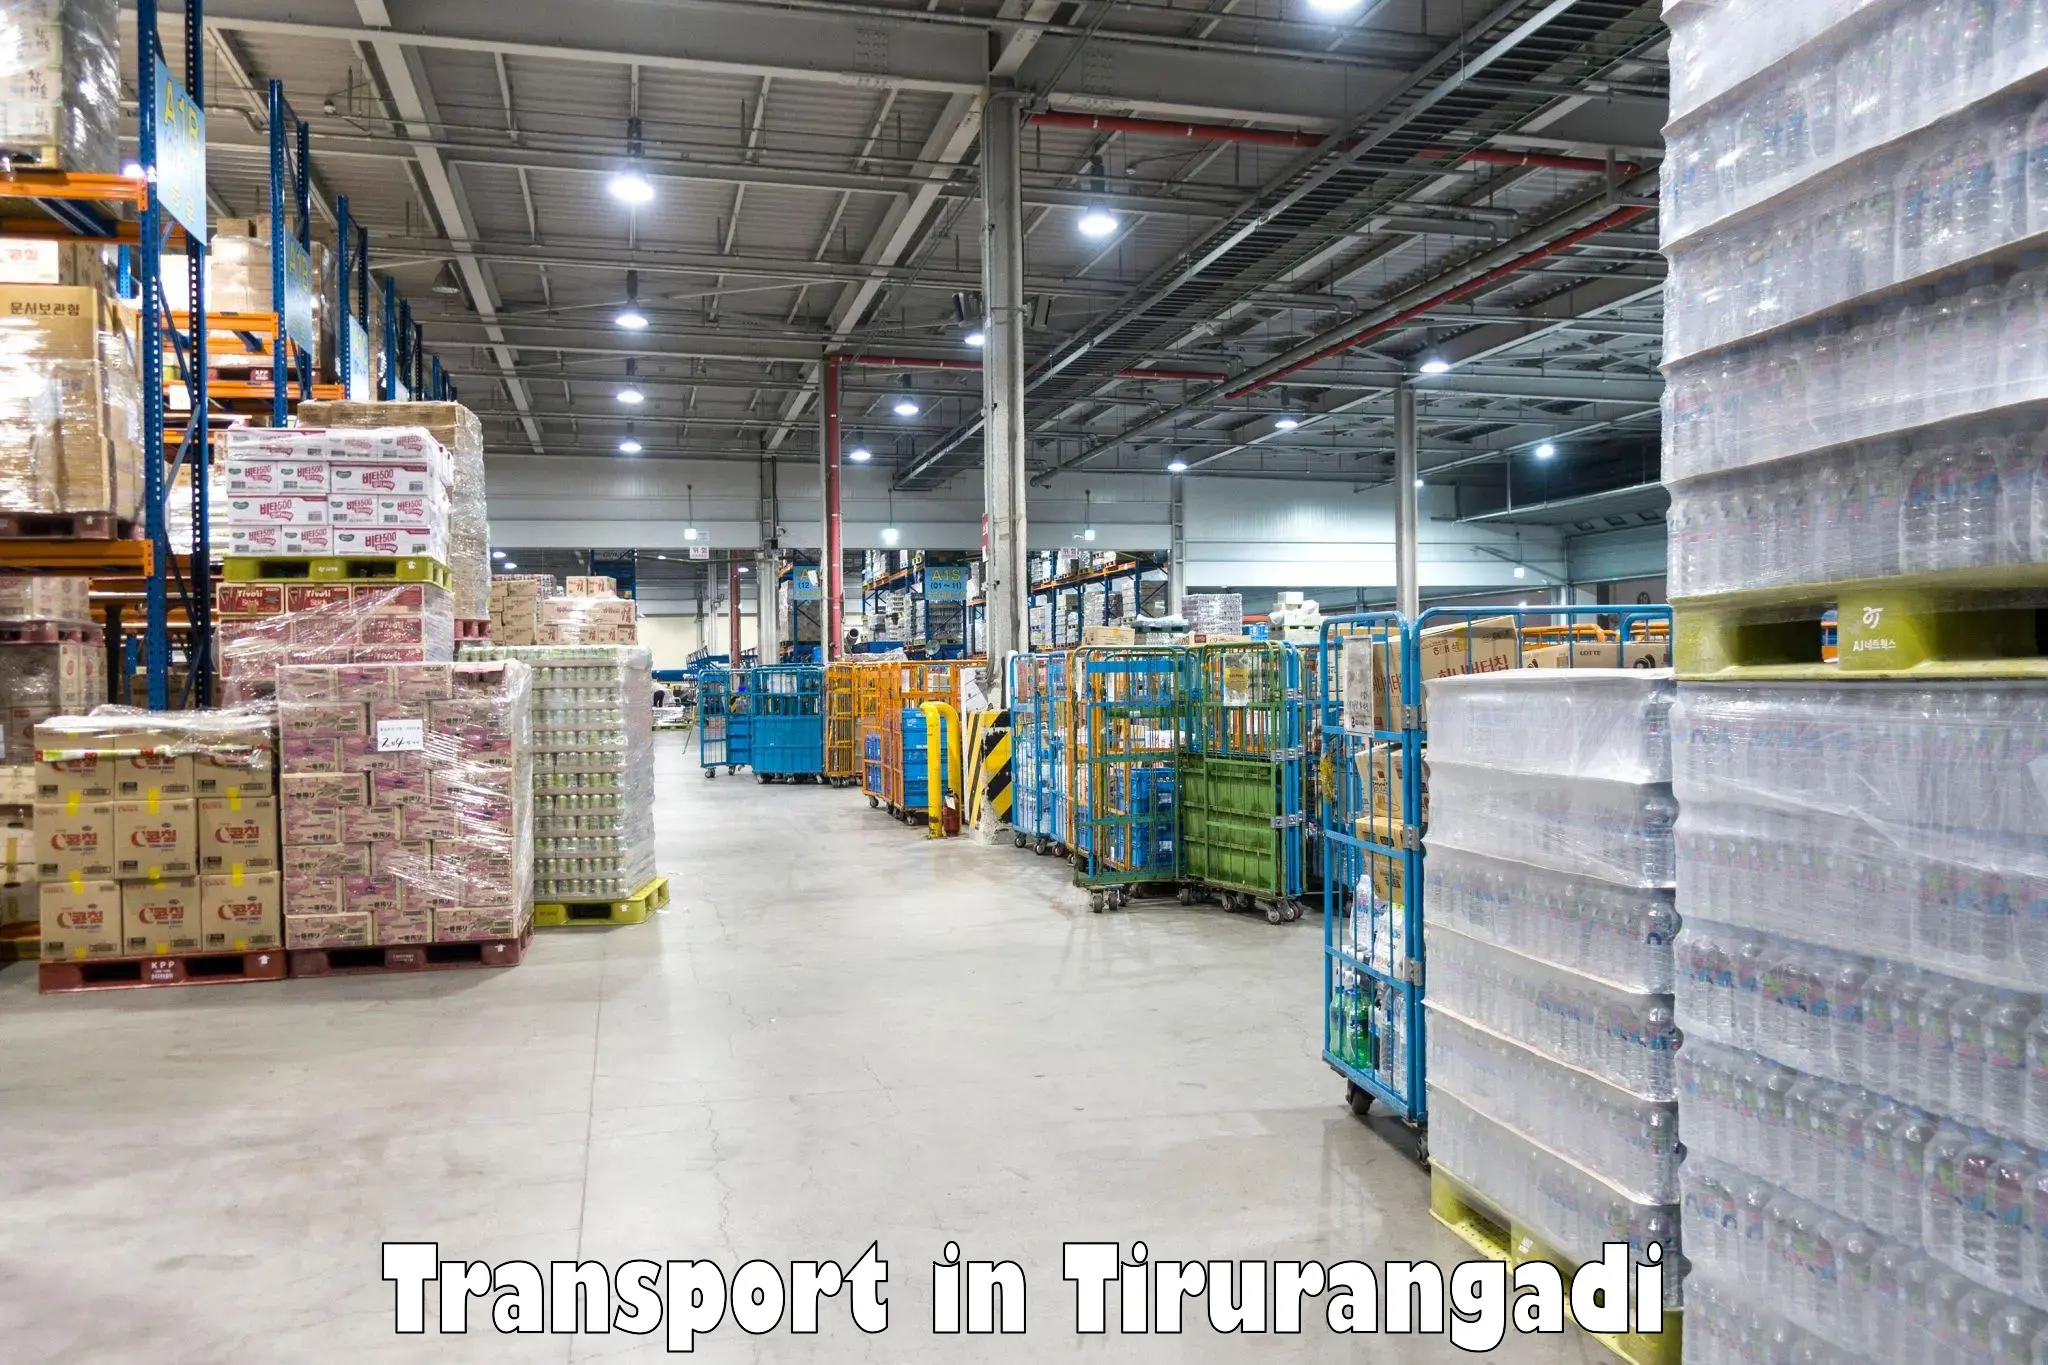 Daily transport service in Tirurangadi